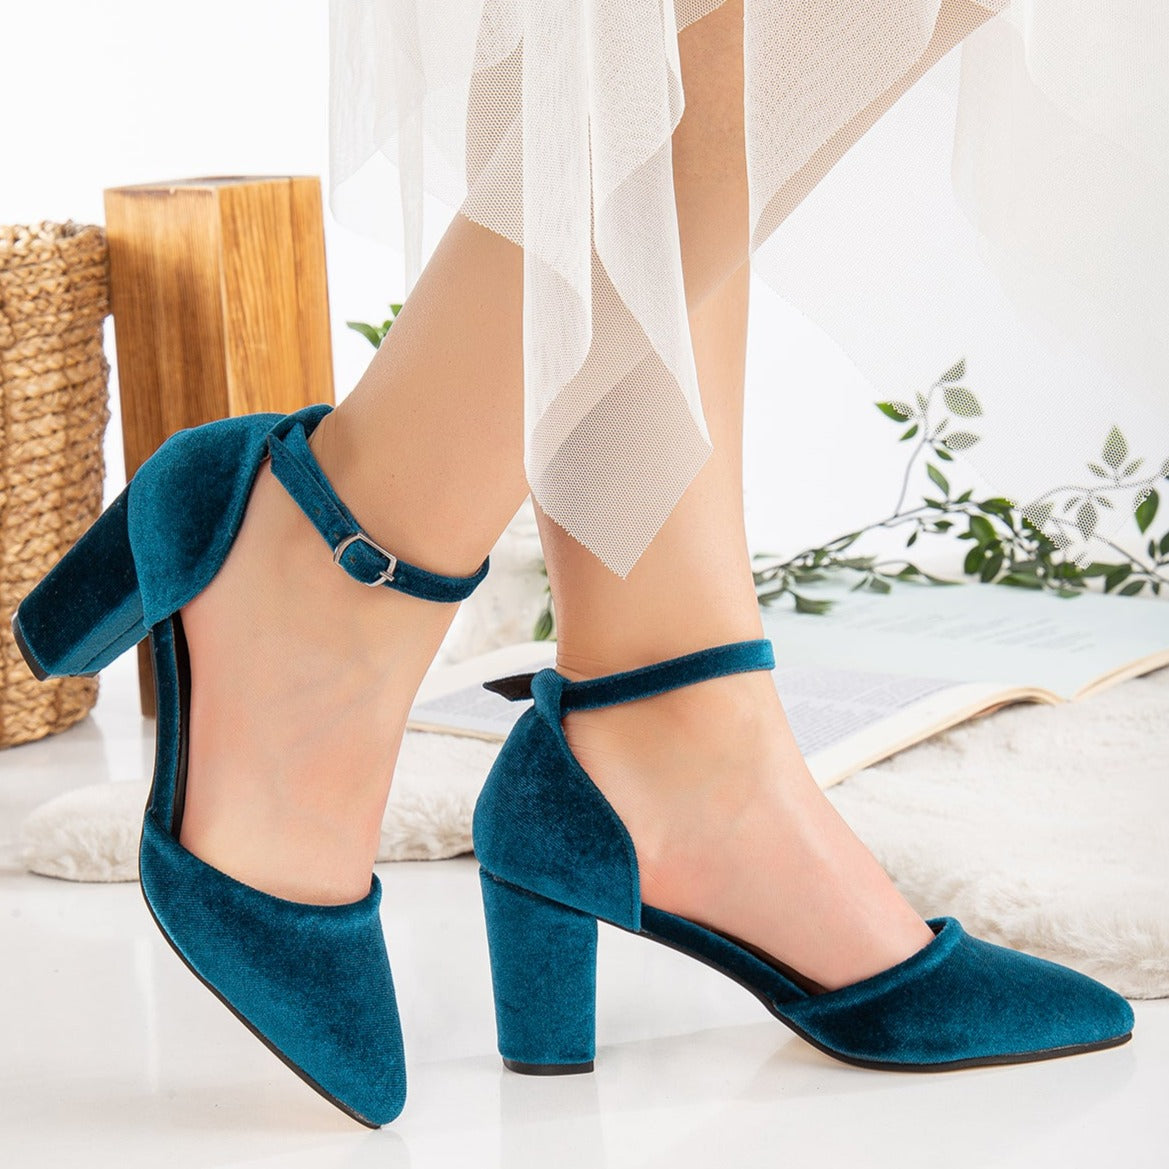 Blue Velvet Shoes, Wedding Shoes, Teal Blue Velvet Shoes, Wedding Heels, Blue Velvet Heels for Bride, Blue Bridal Heels, Blue Block Heels